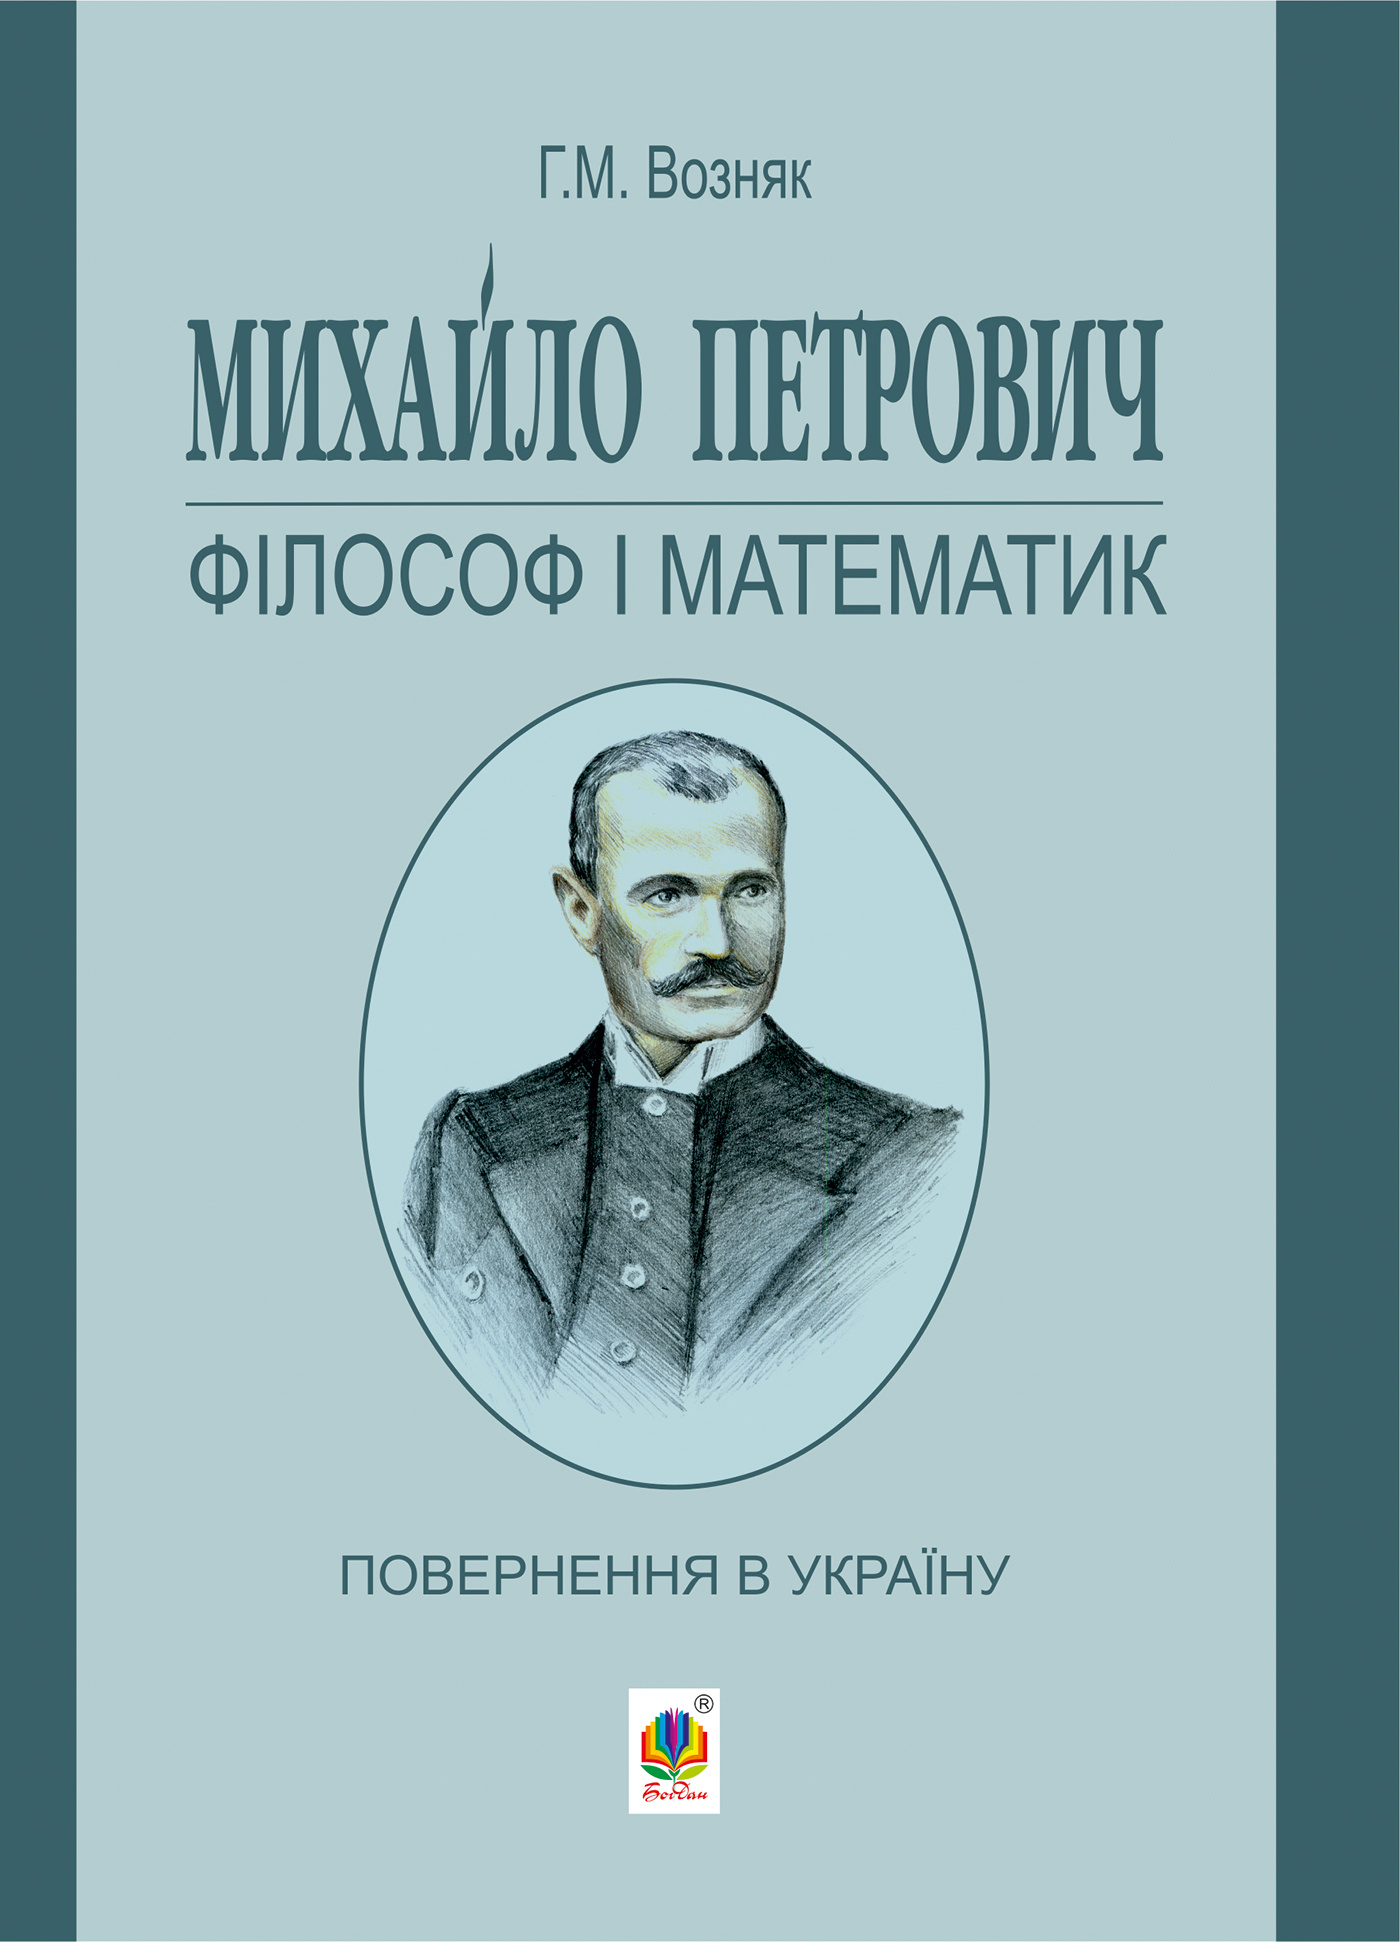 Михайло Петрович – філософ і математик. Повернення в Україну